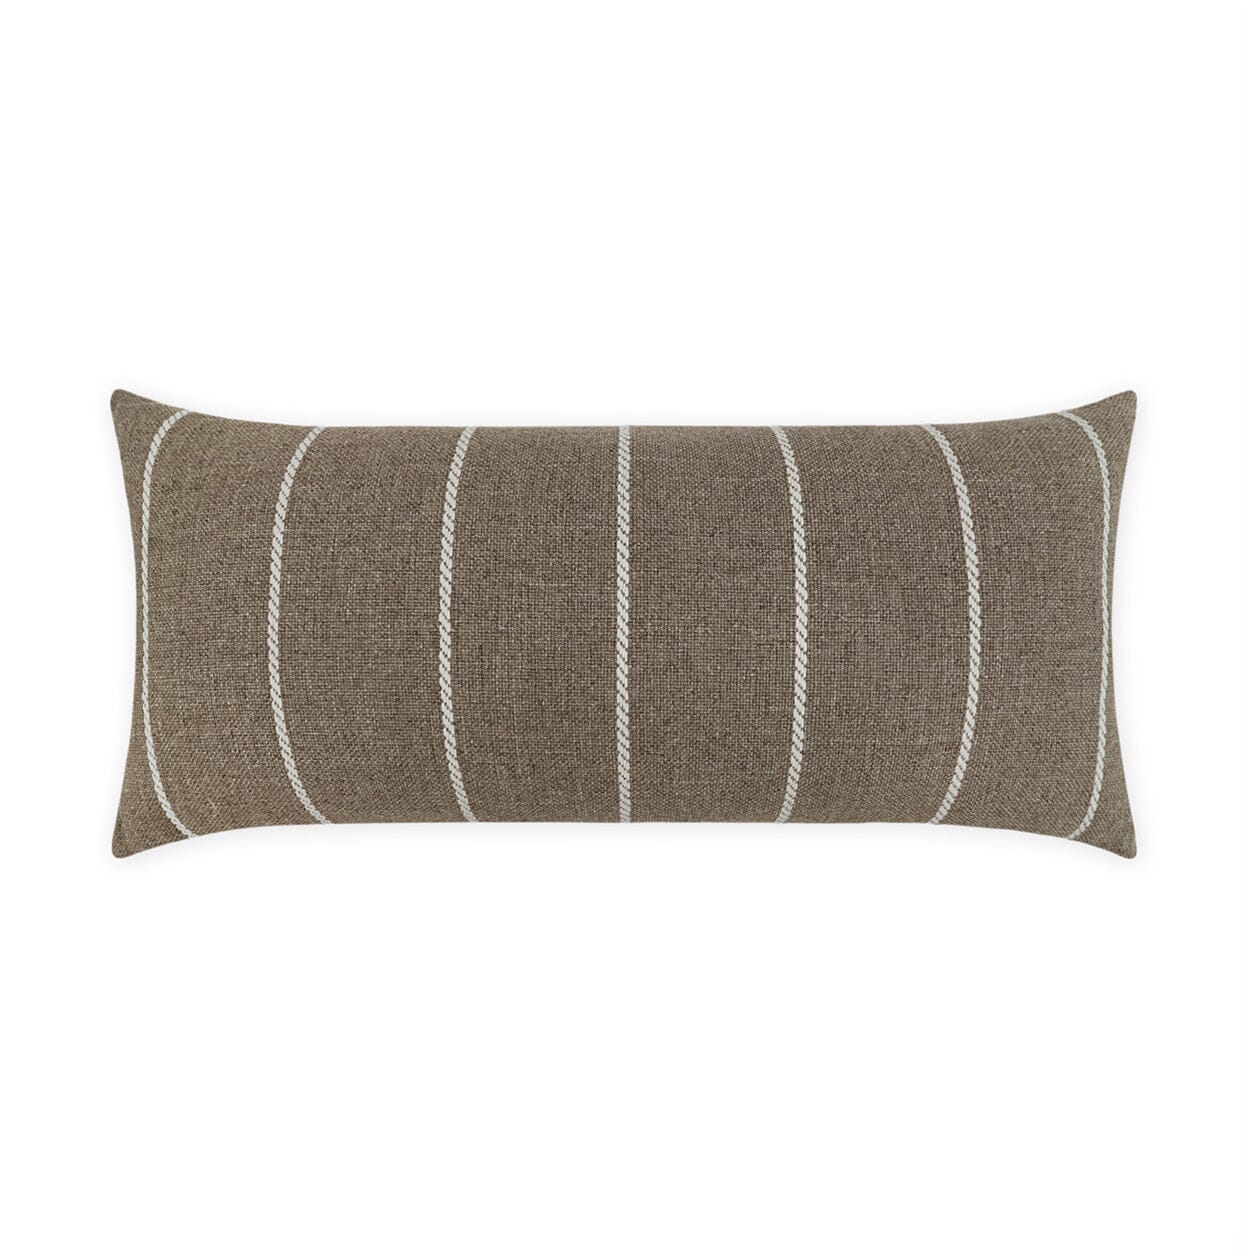 D.V. Kap 12" x 24" Outdoor Lumbar Pillow | Pencil Taffy Lumbar Pillows D.V Kap Home